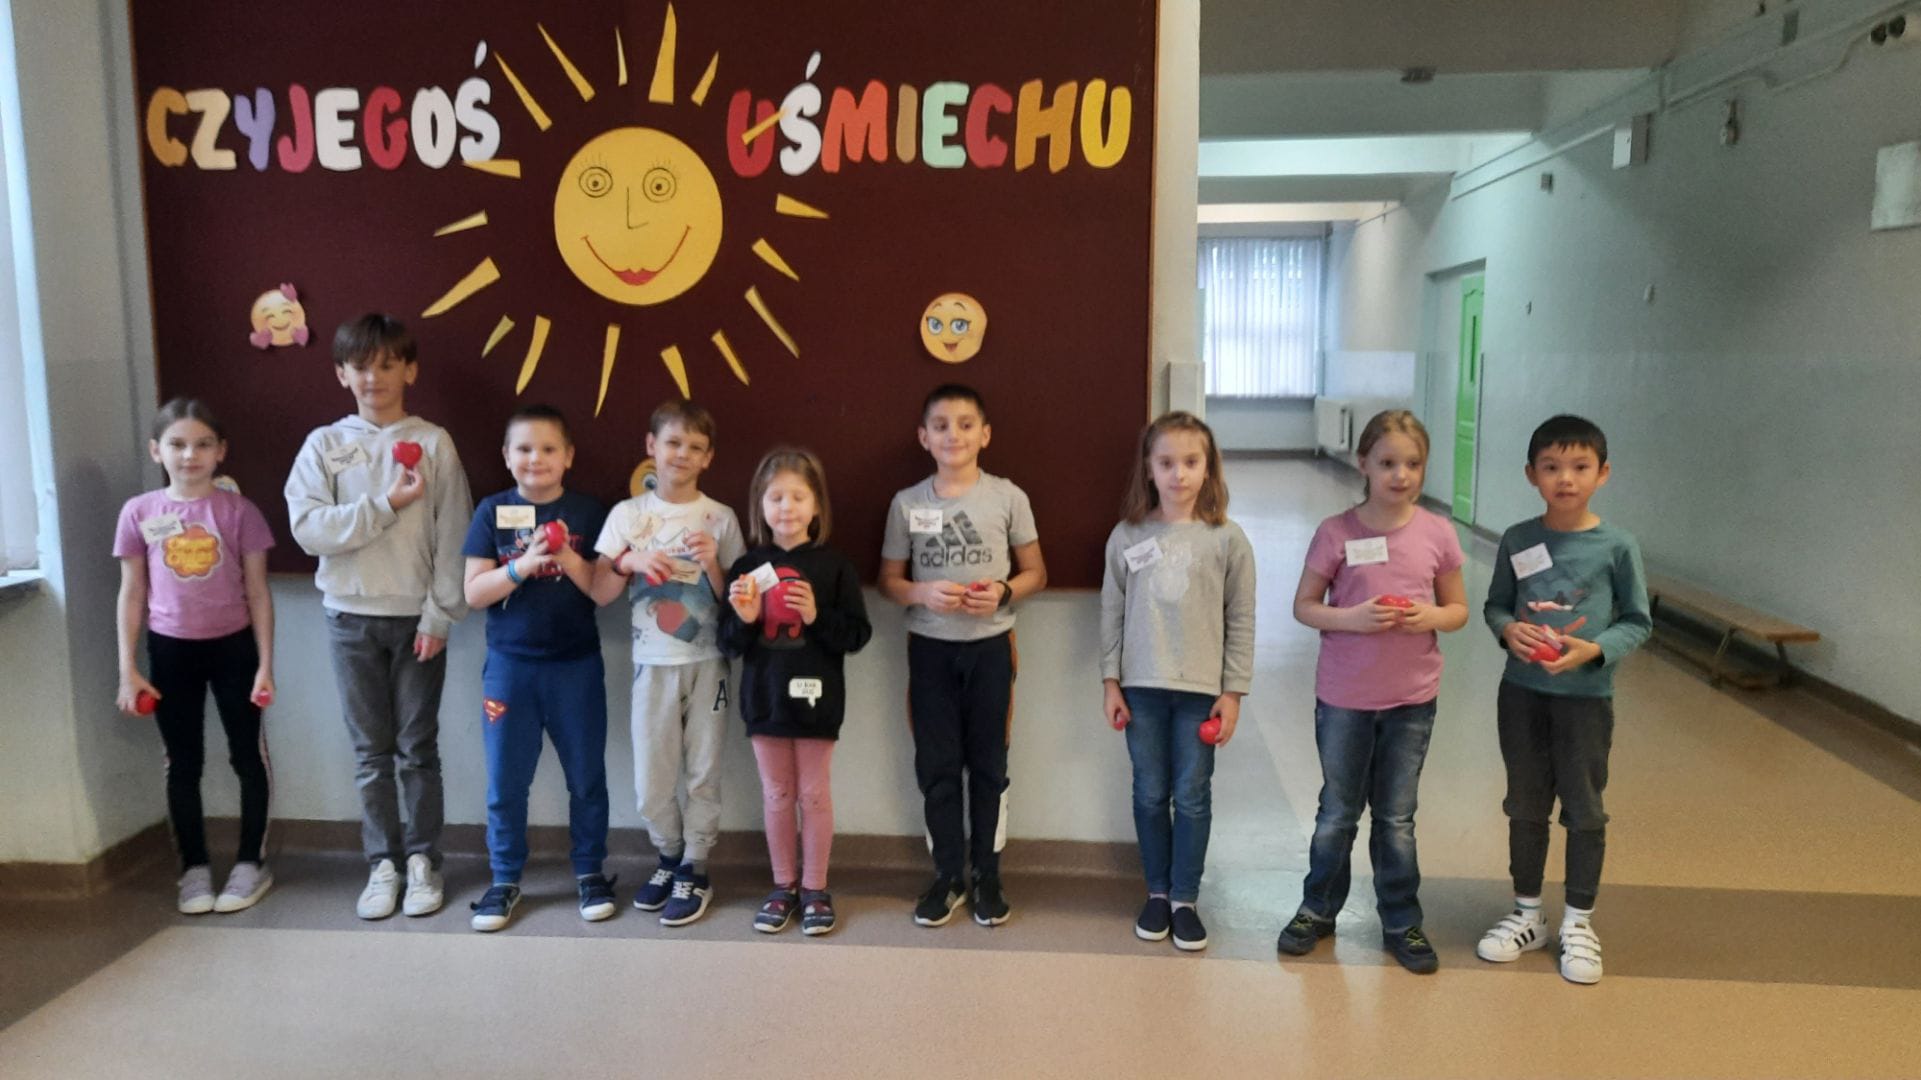 Cztery dziewczynki i pięciu chłopców z klas 1-3 wyróżnieni tytułem "Najżyczliwsi 2022" stoją przed tablicą. W rękach trzymają czerwone serduszka.